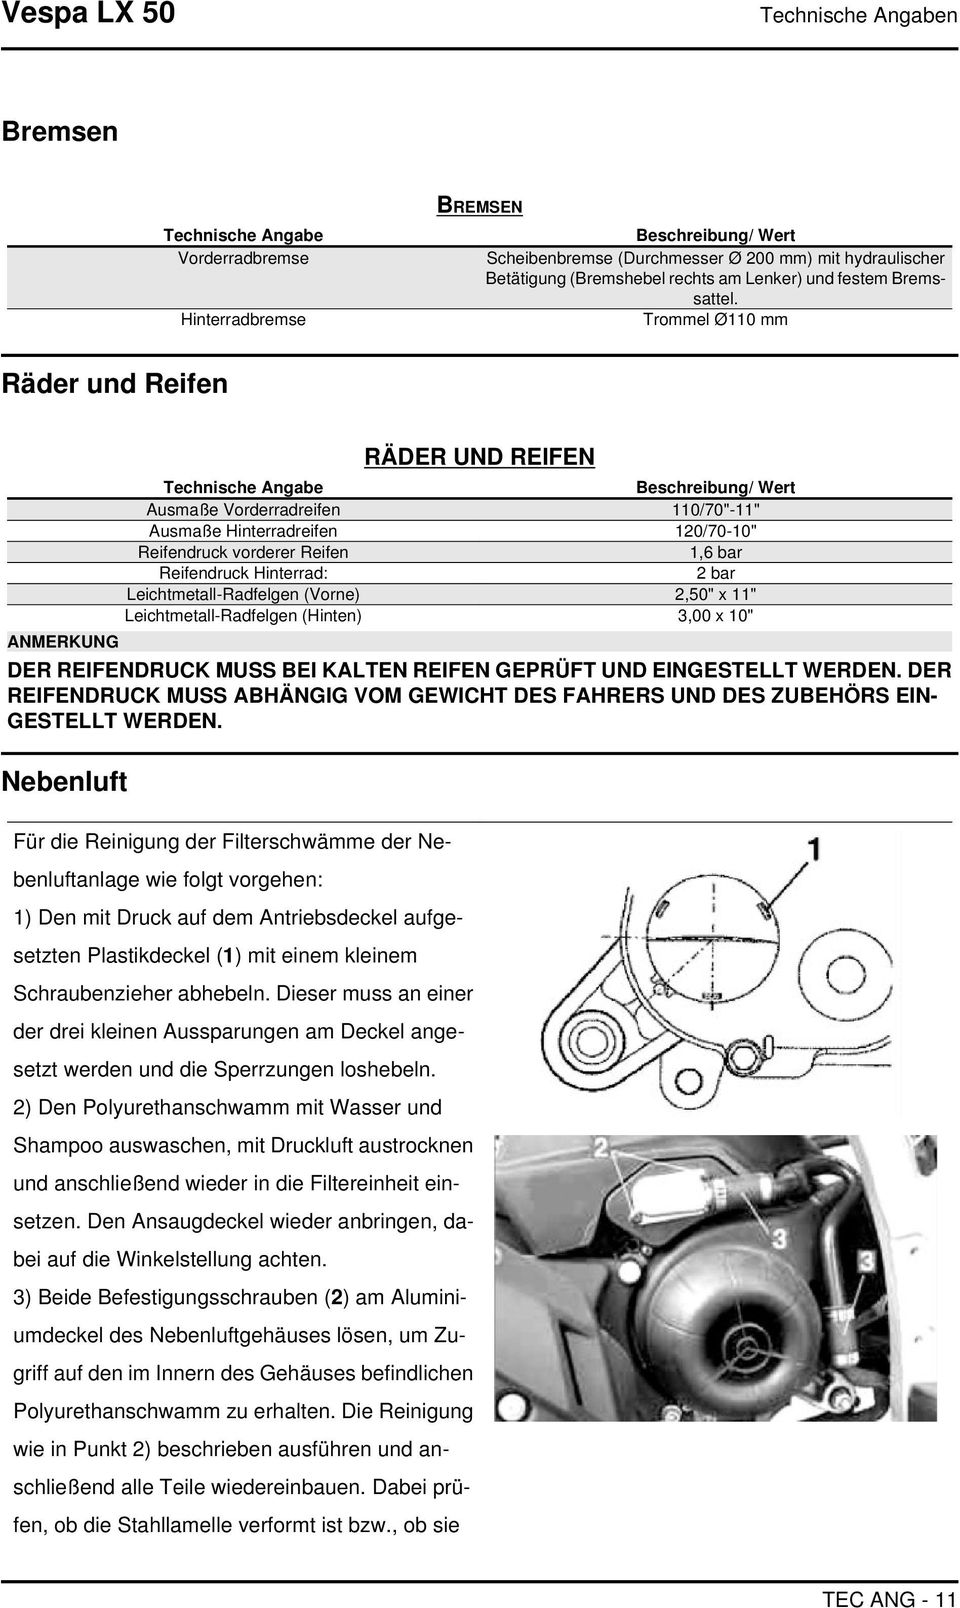 Trommel Ø110 mm Räder und Reifen ANMERKUNG RÄDER UND REIFEN Technische Angabe Beschreibung/ Wert Ausmaße Vorderradreifen 110/70"-11" Ausmaße Hinterradreifen 120/70-10" Reifendruck vorderer Reifen 1,6